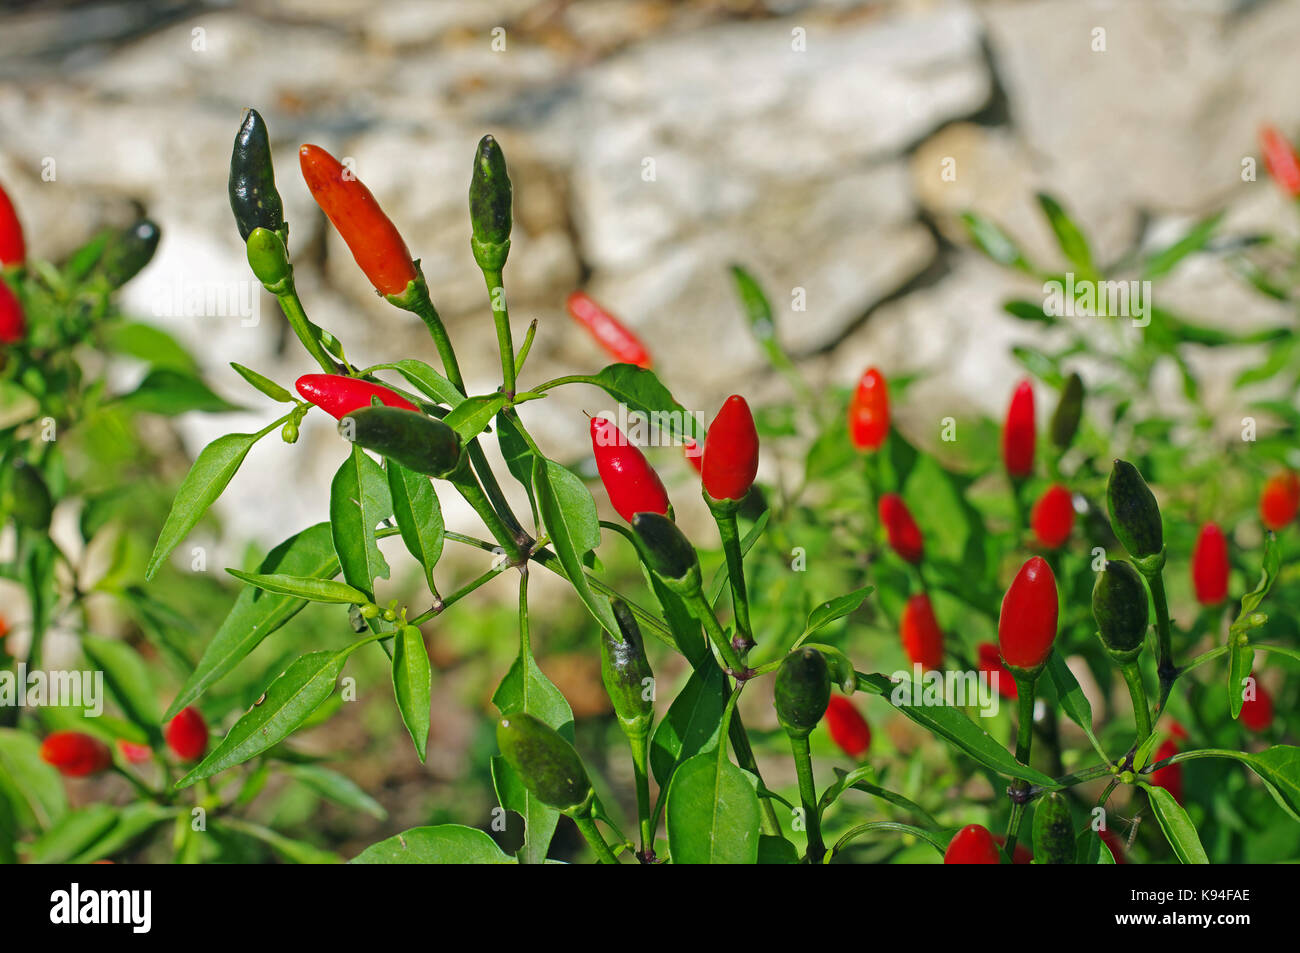 Dies ist Capsicum annuum, die roten Pfeffer oder Chili, aus der Familie der Solanaceae Stockfoto